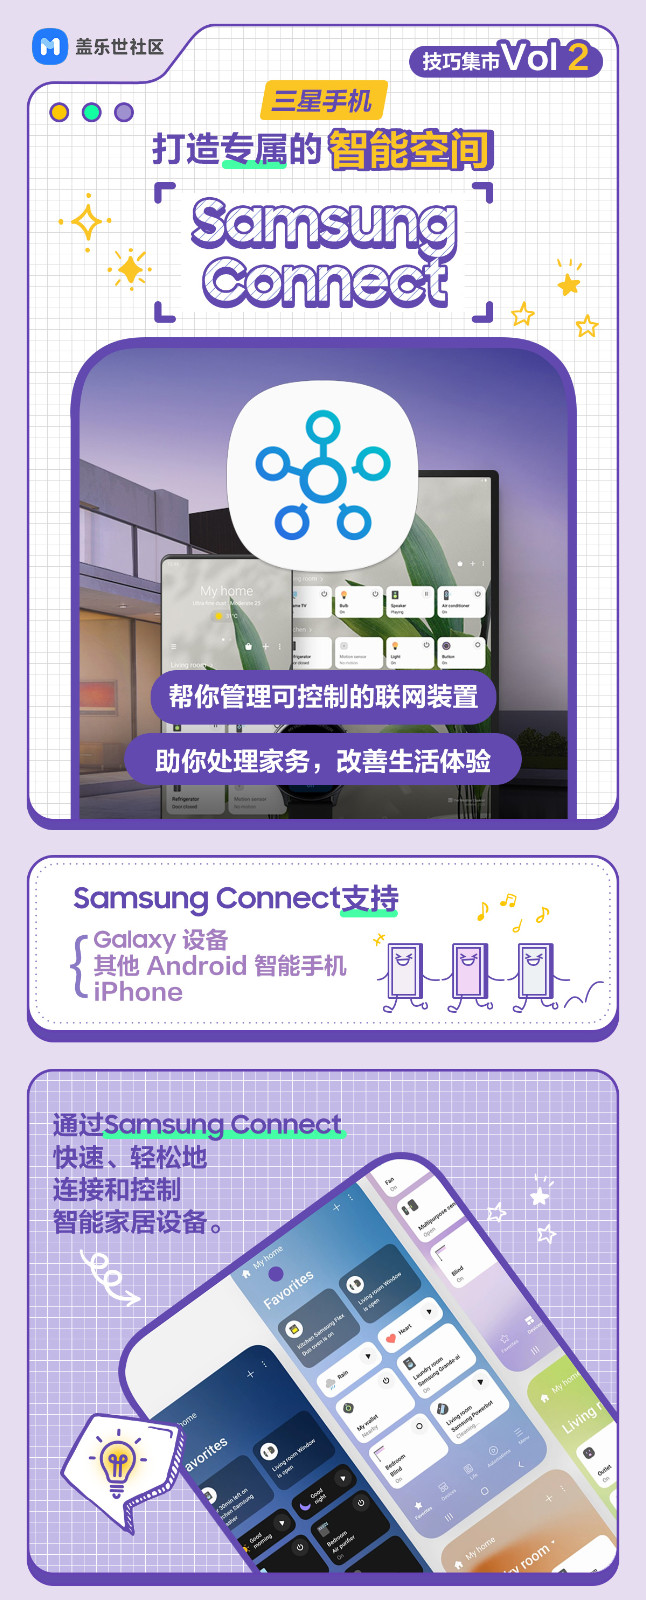 技巧集市Vol 2 | 打造专属智能空间 —— <Samsung Connect>